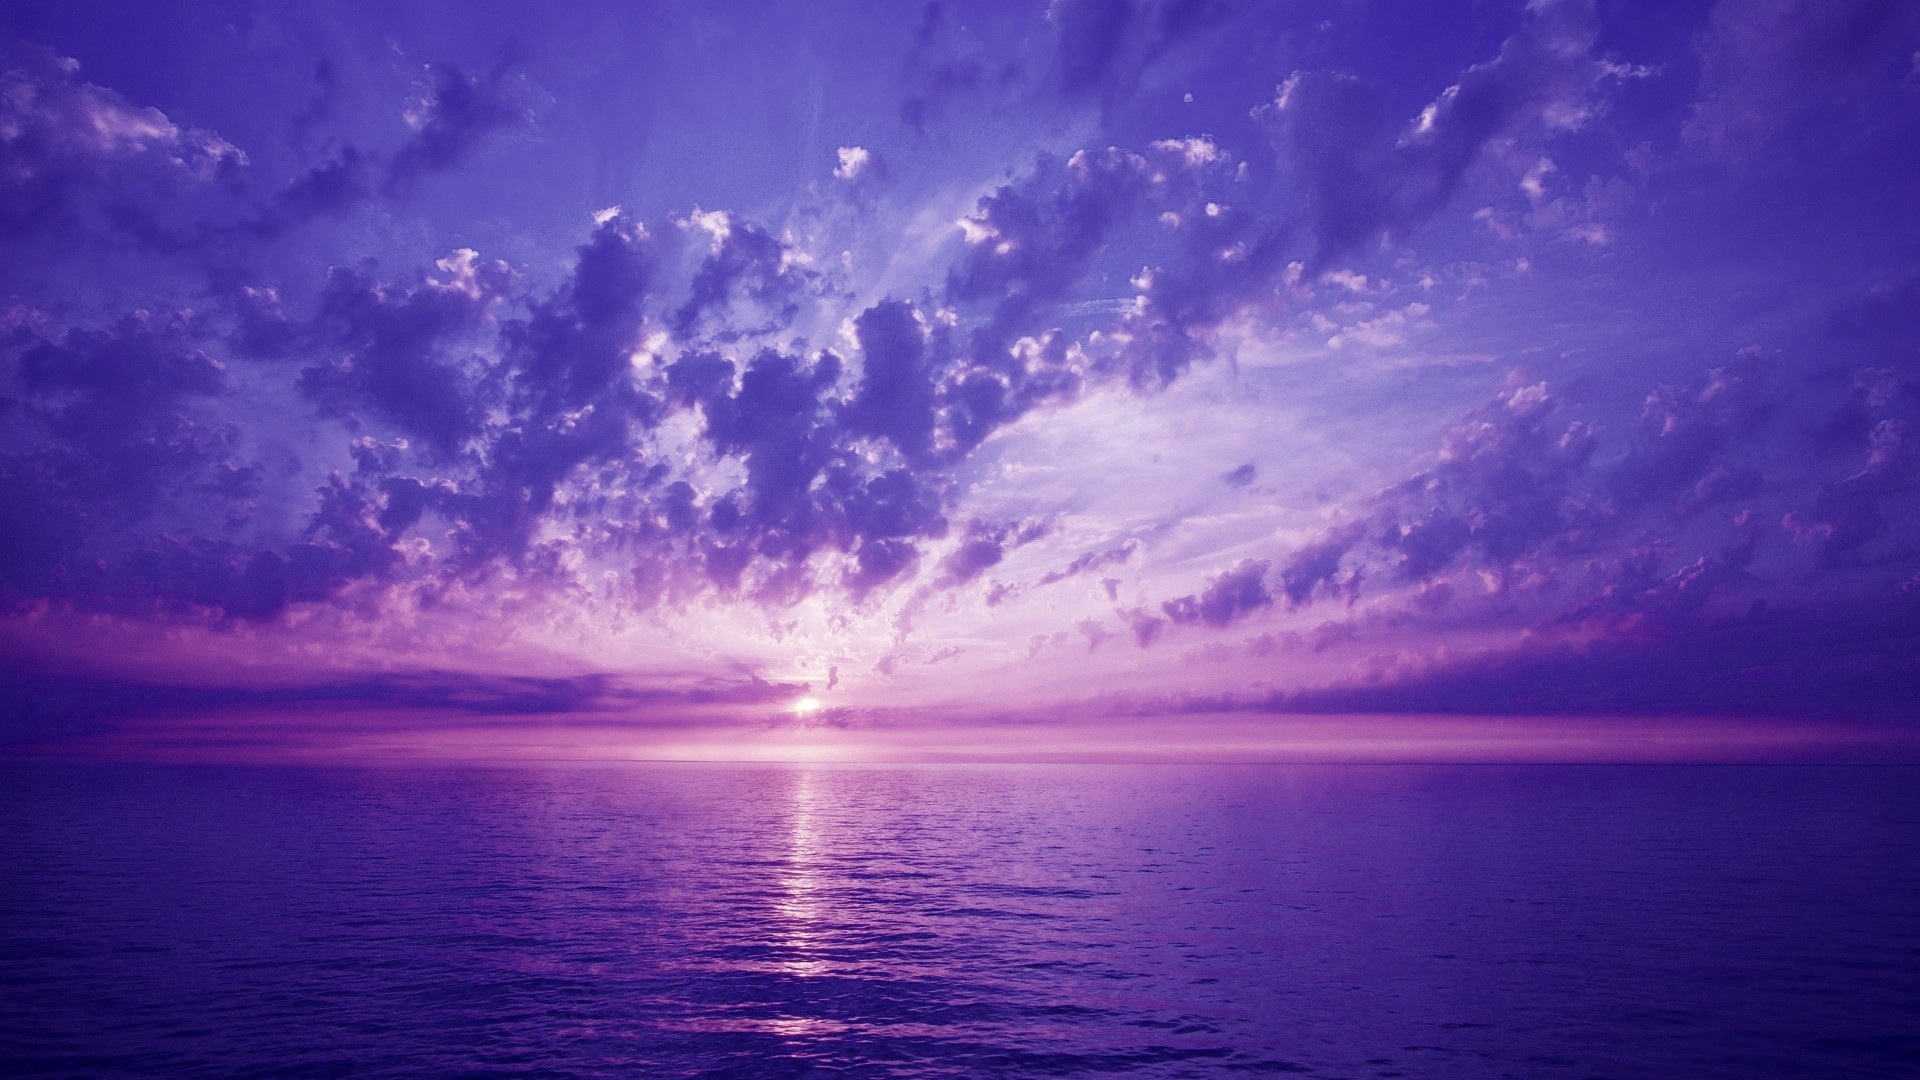 天空中的紫色晚霞与海面上的云彩